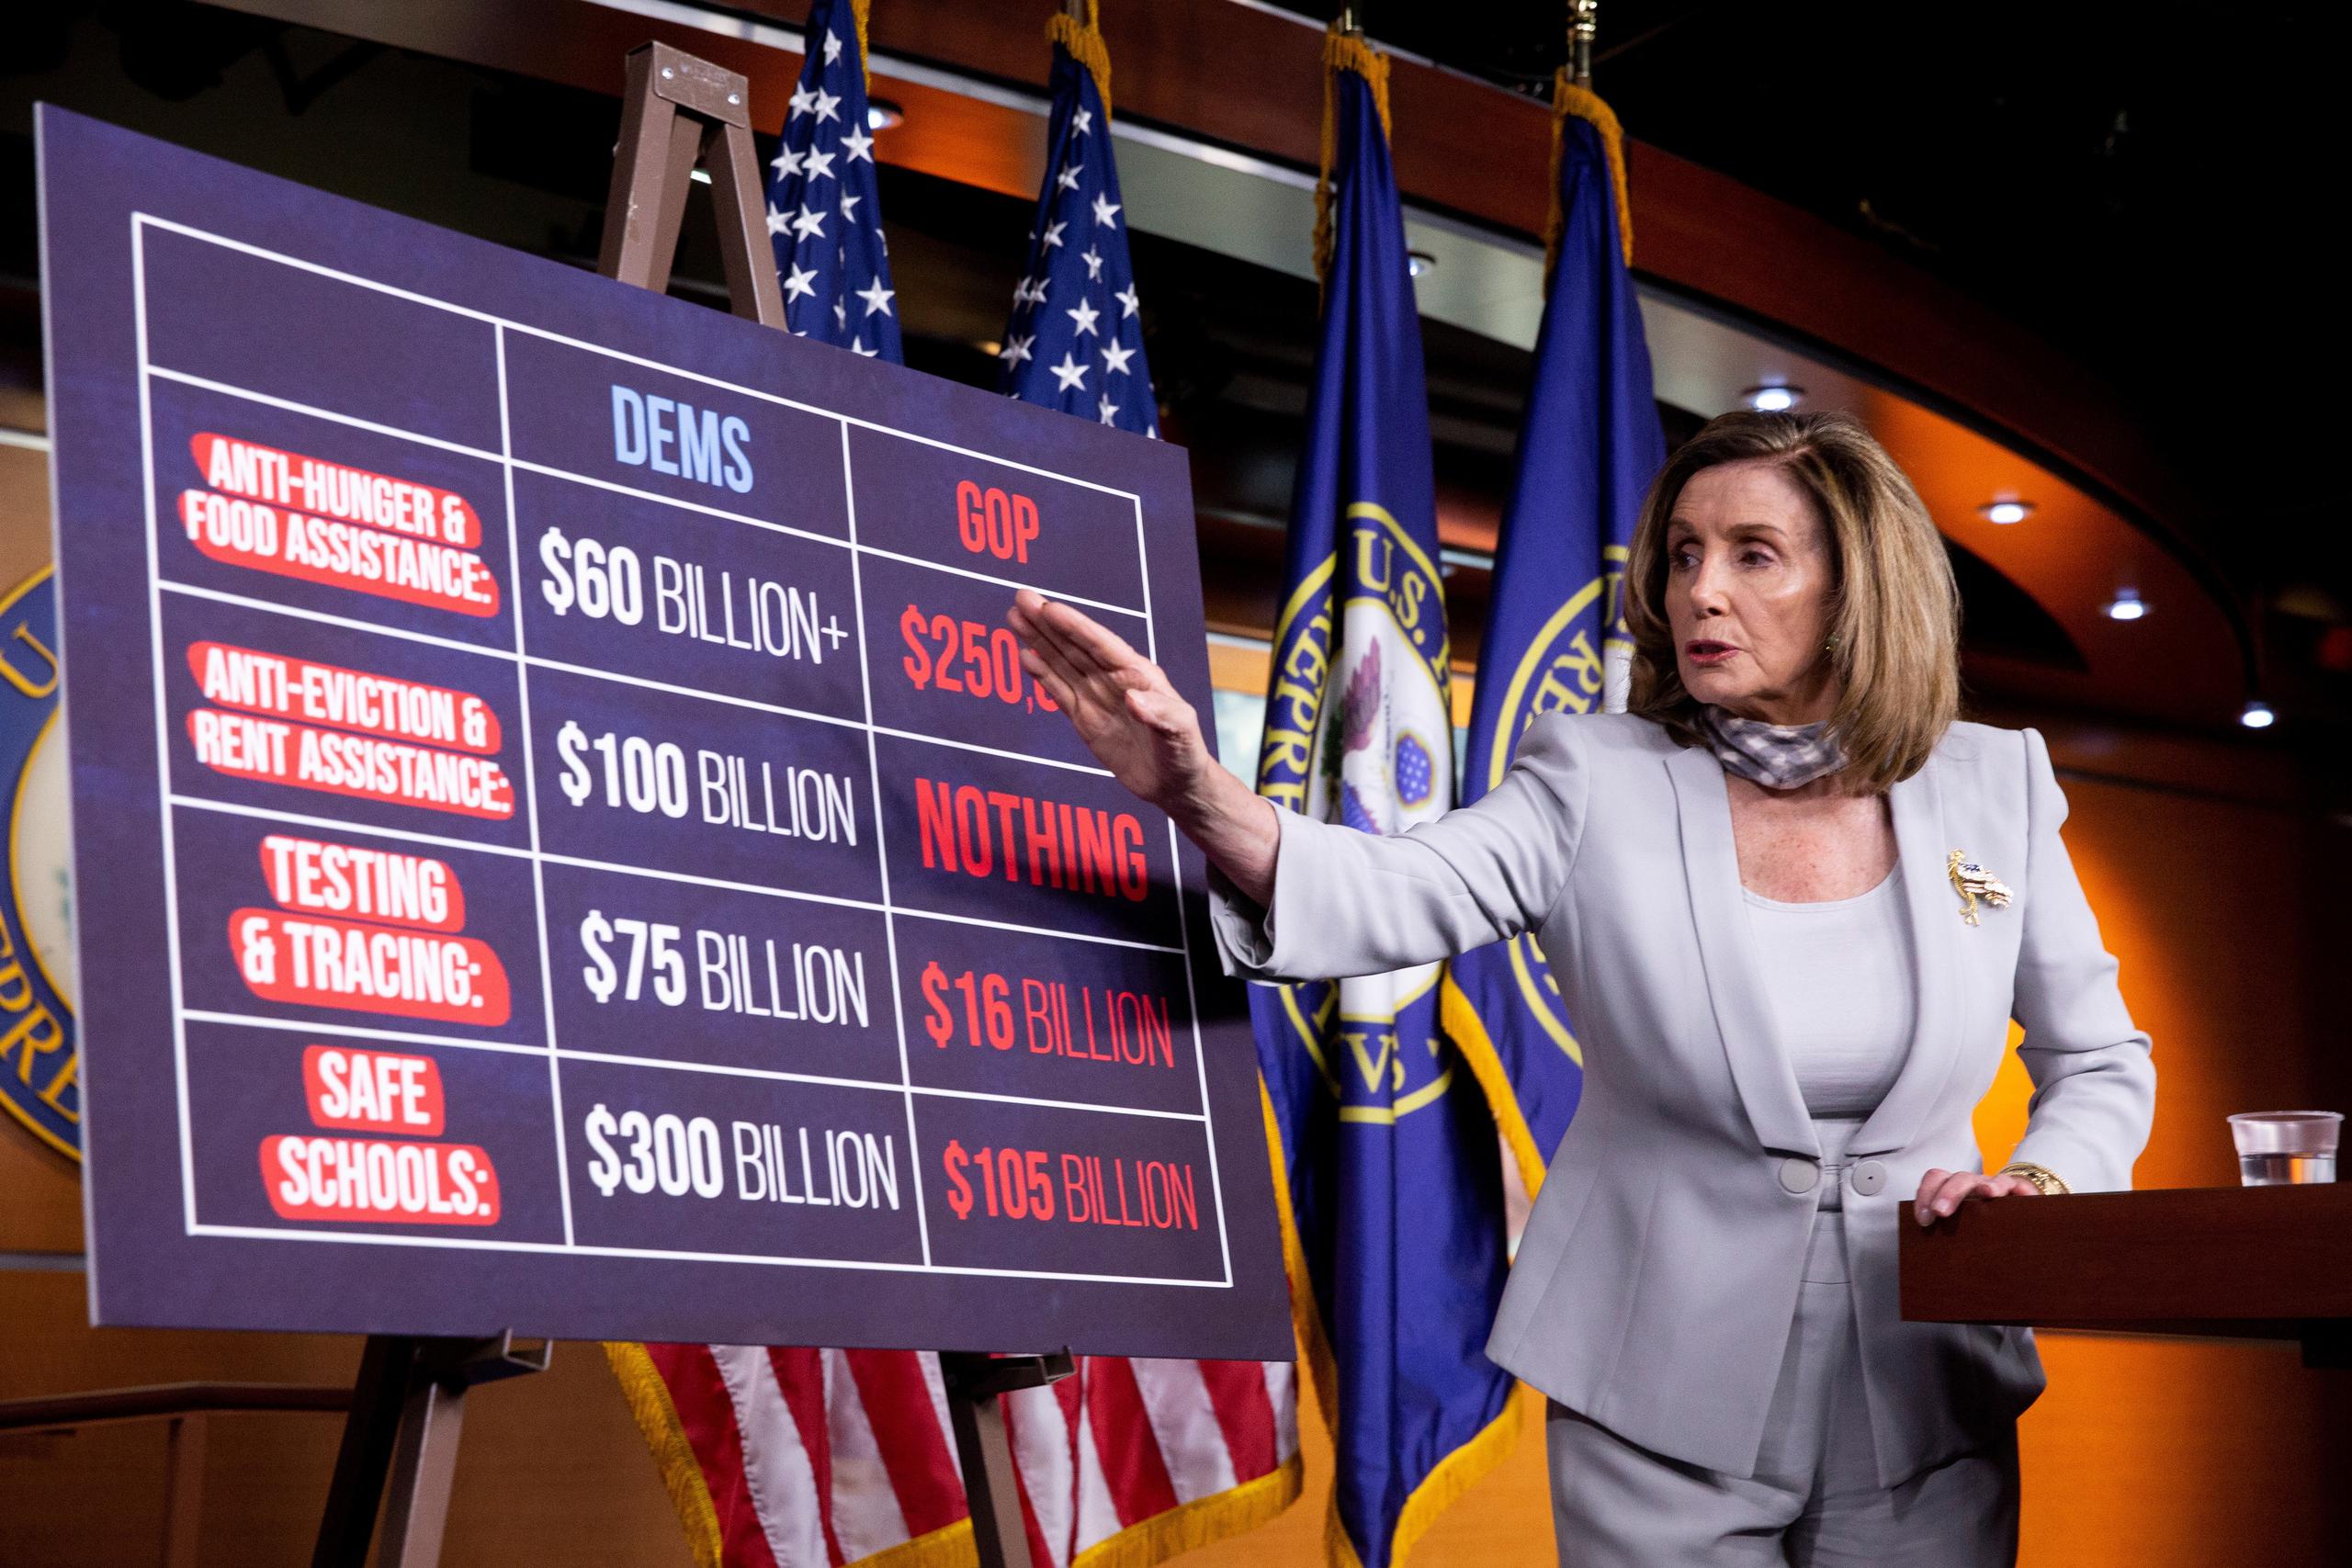 Los demócratas han presentado una propuesta de estímulo por cerca de 3.4 billones de dólares, mientras que los republicanos se han negado a ampliar su plan inicial de 1 billón de dólares, lo que refleja la gran distancia entre ambos.